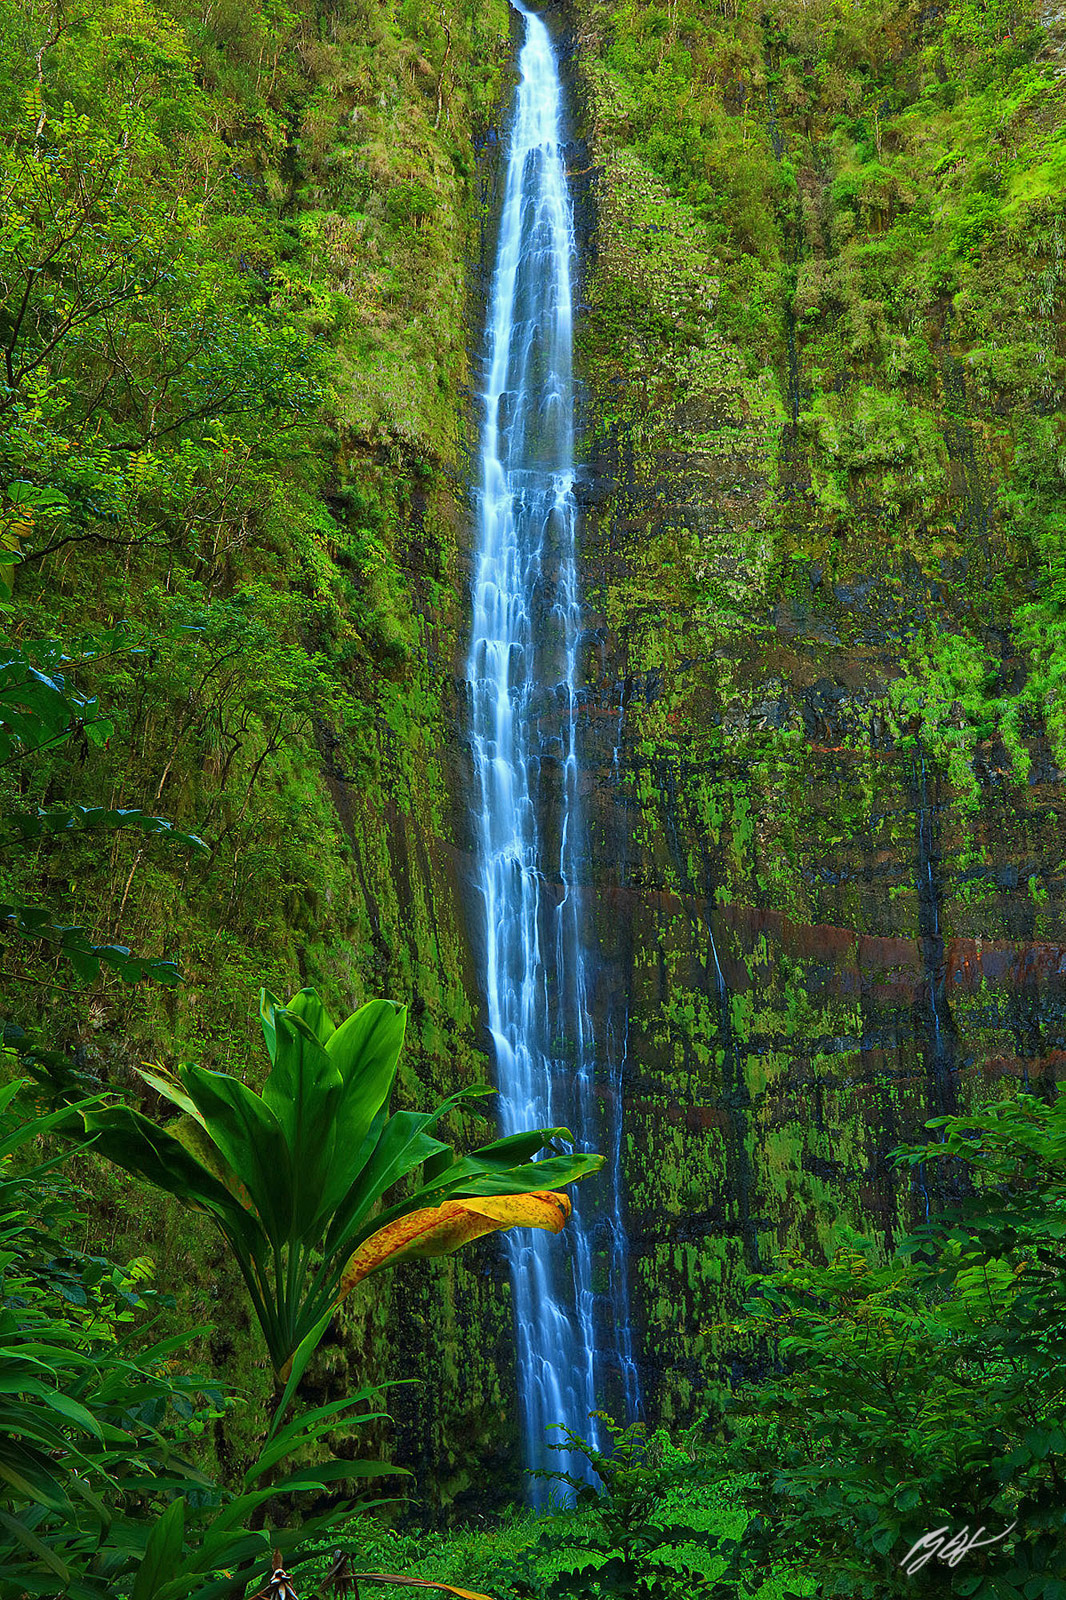 Makahiku Falls and the end of the Pipiwau Trail in Haleakala National Park on the island of Maui, Hawaii